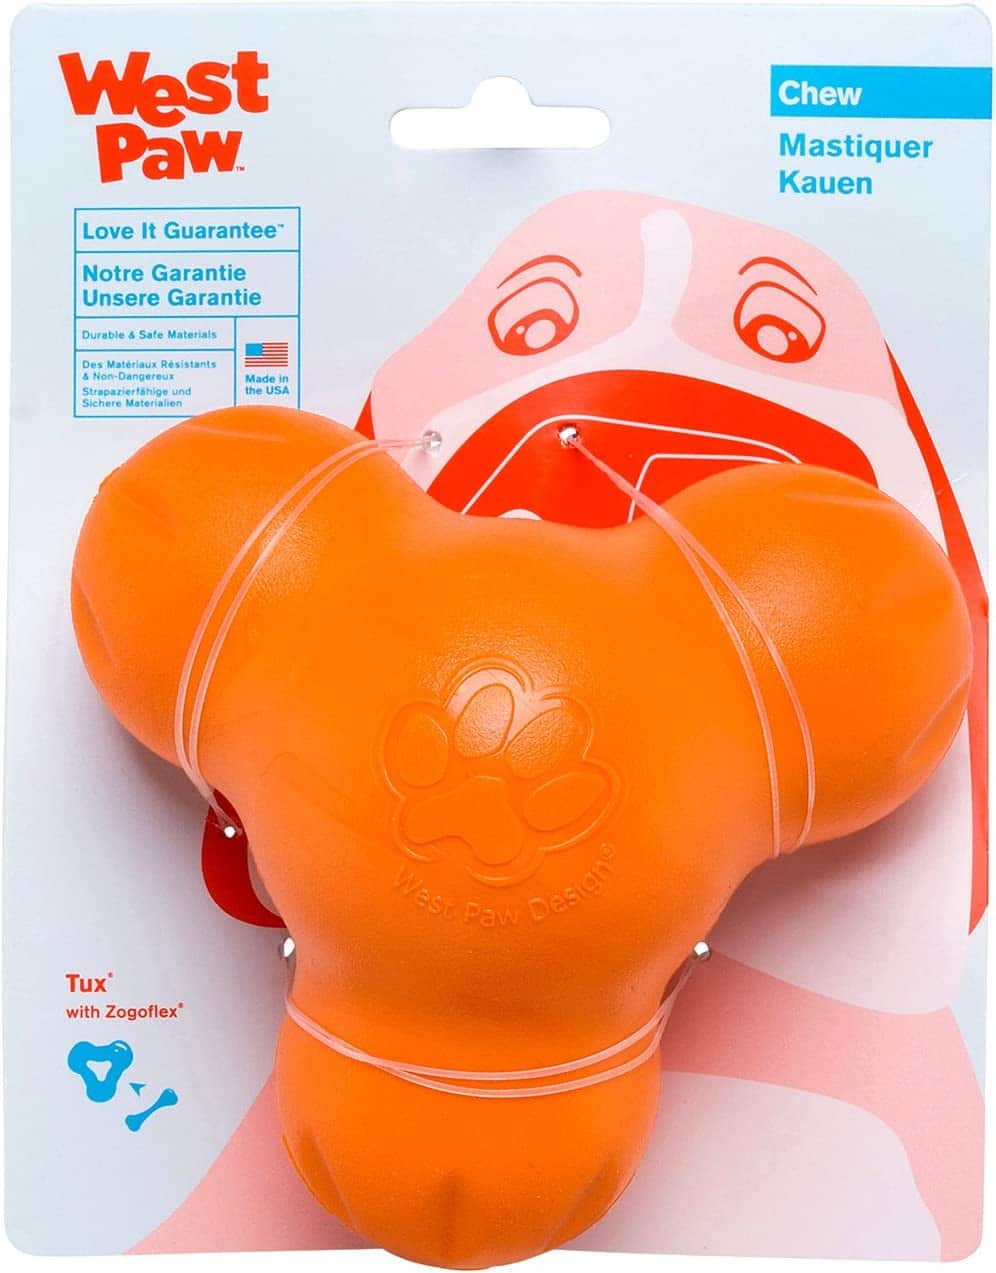 West Paw Zogoflex Tux chew toy